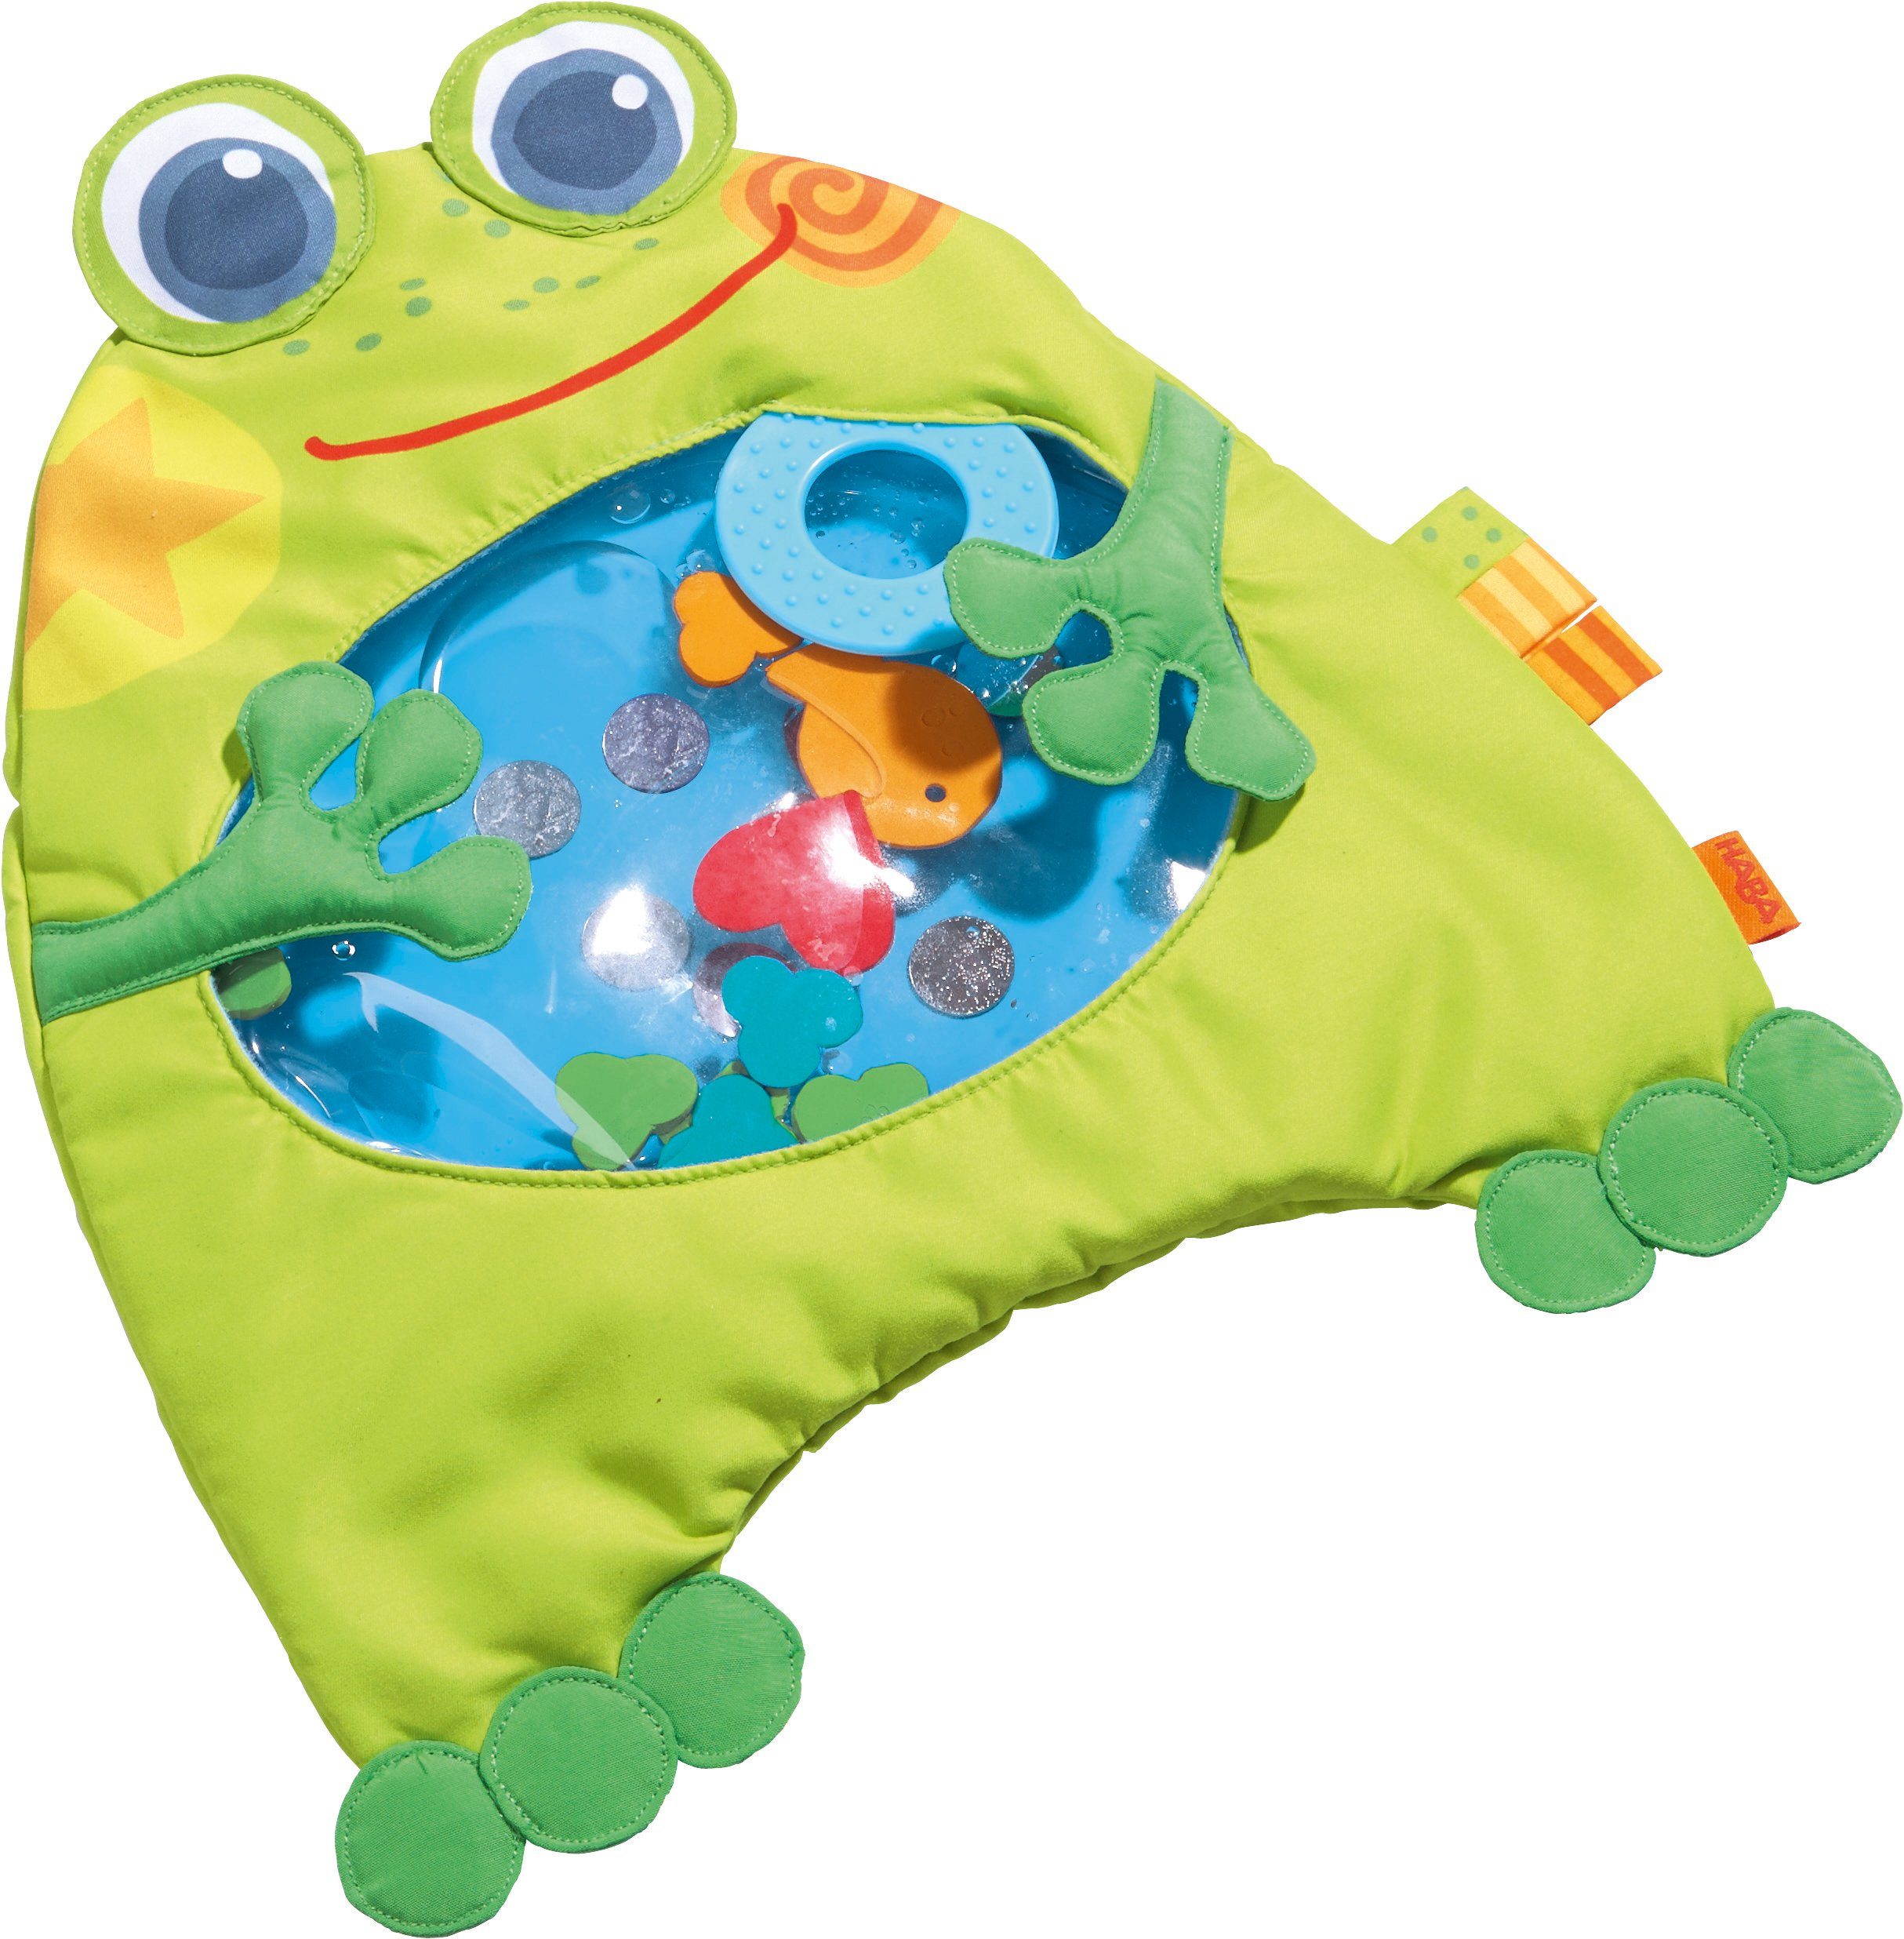 Haba Spielmatte »Kleiner Frosch«, Ab 6 Monaten online kaufen | OTTO